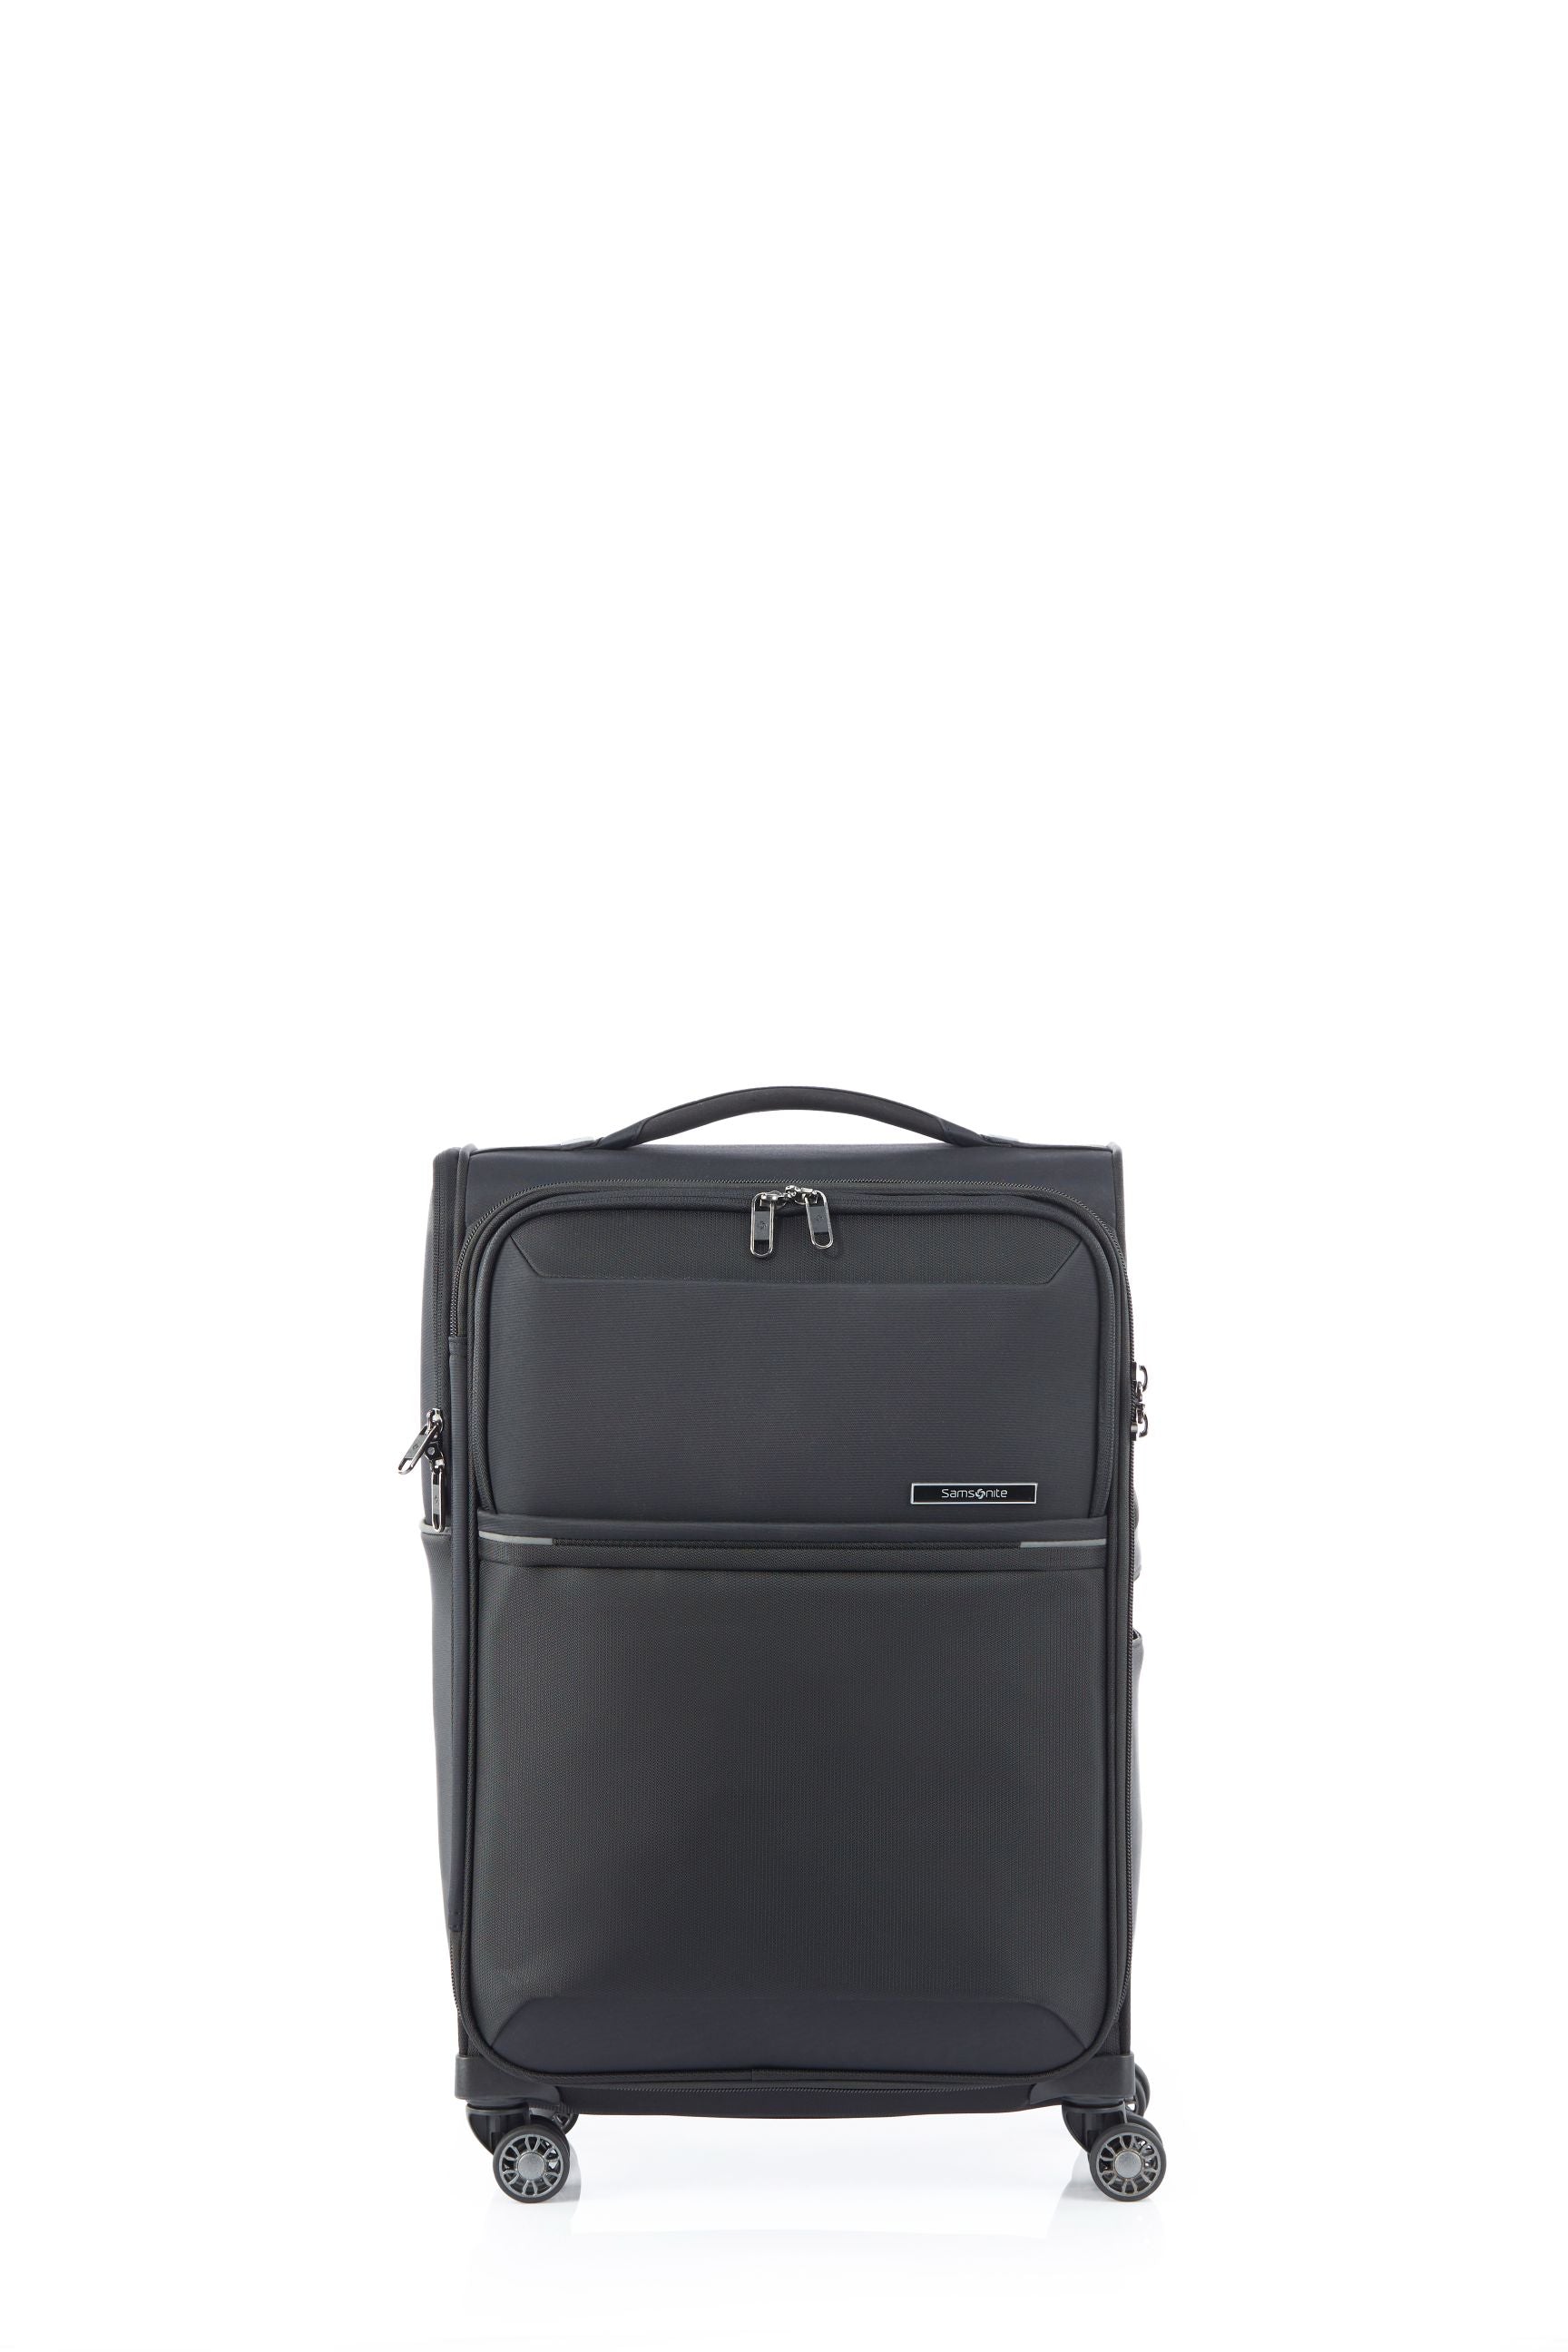 Samsonite - 73HR 55cm Small Suitcase - Black-2